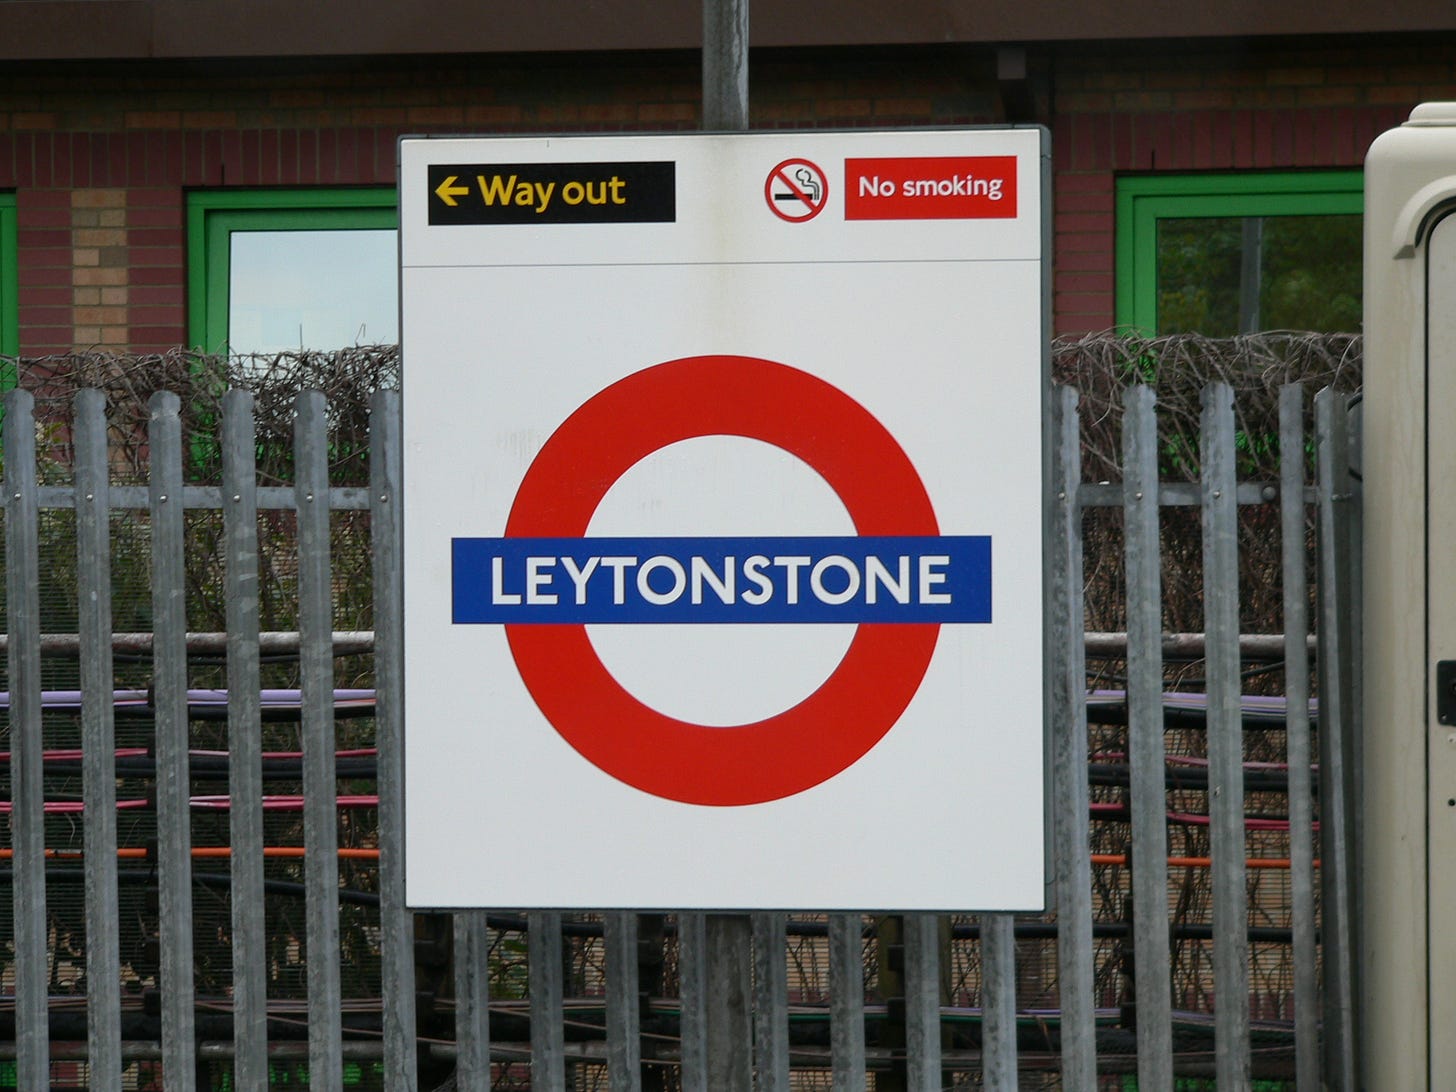 A fonte Johnston usada na sinalização da estação Leytonstone.